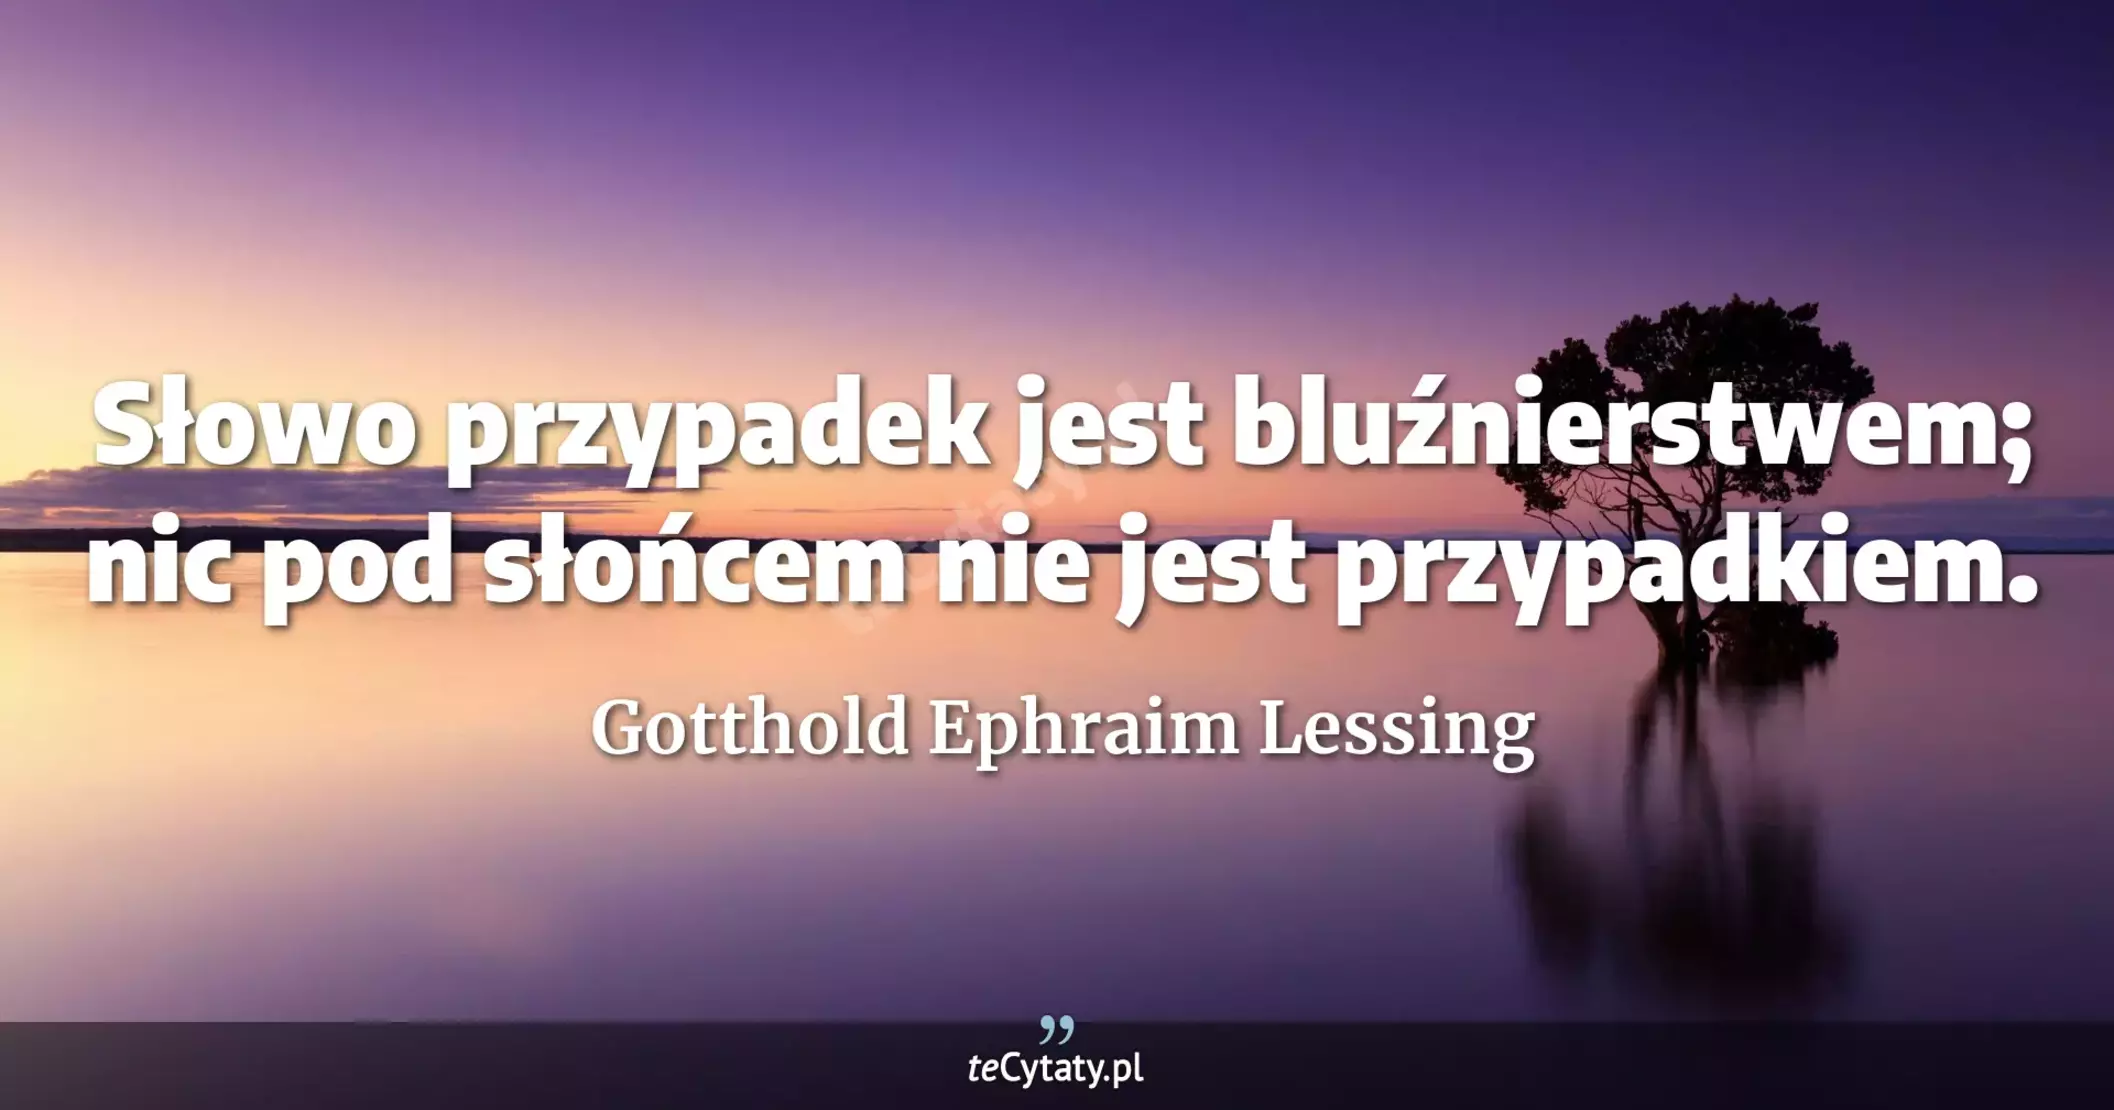 Słowo przypadek jest bluźnierstwem; nic pod słońcem nie jest przypadkiem. - Gotthold Ephraim Lessing